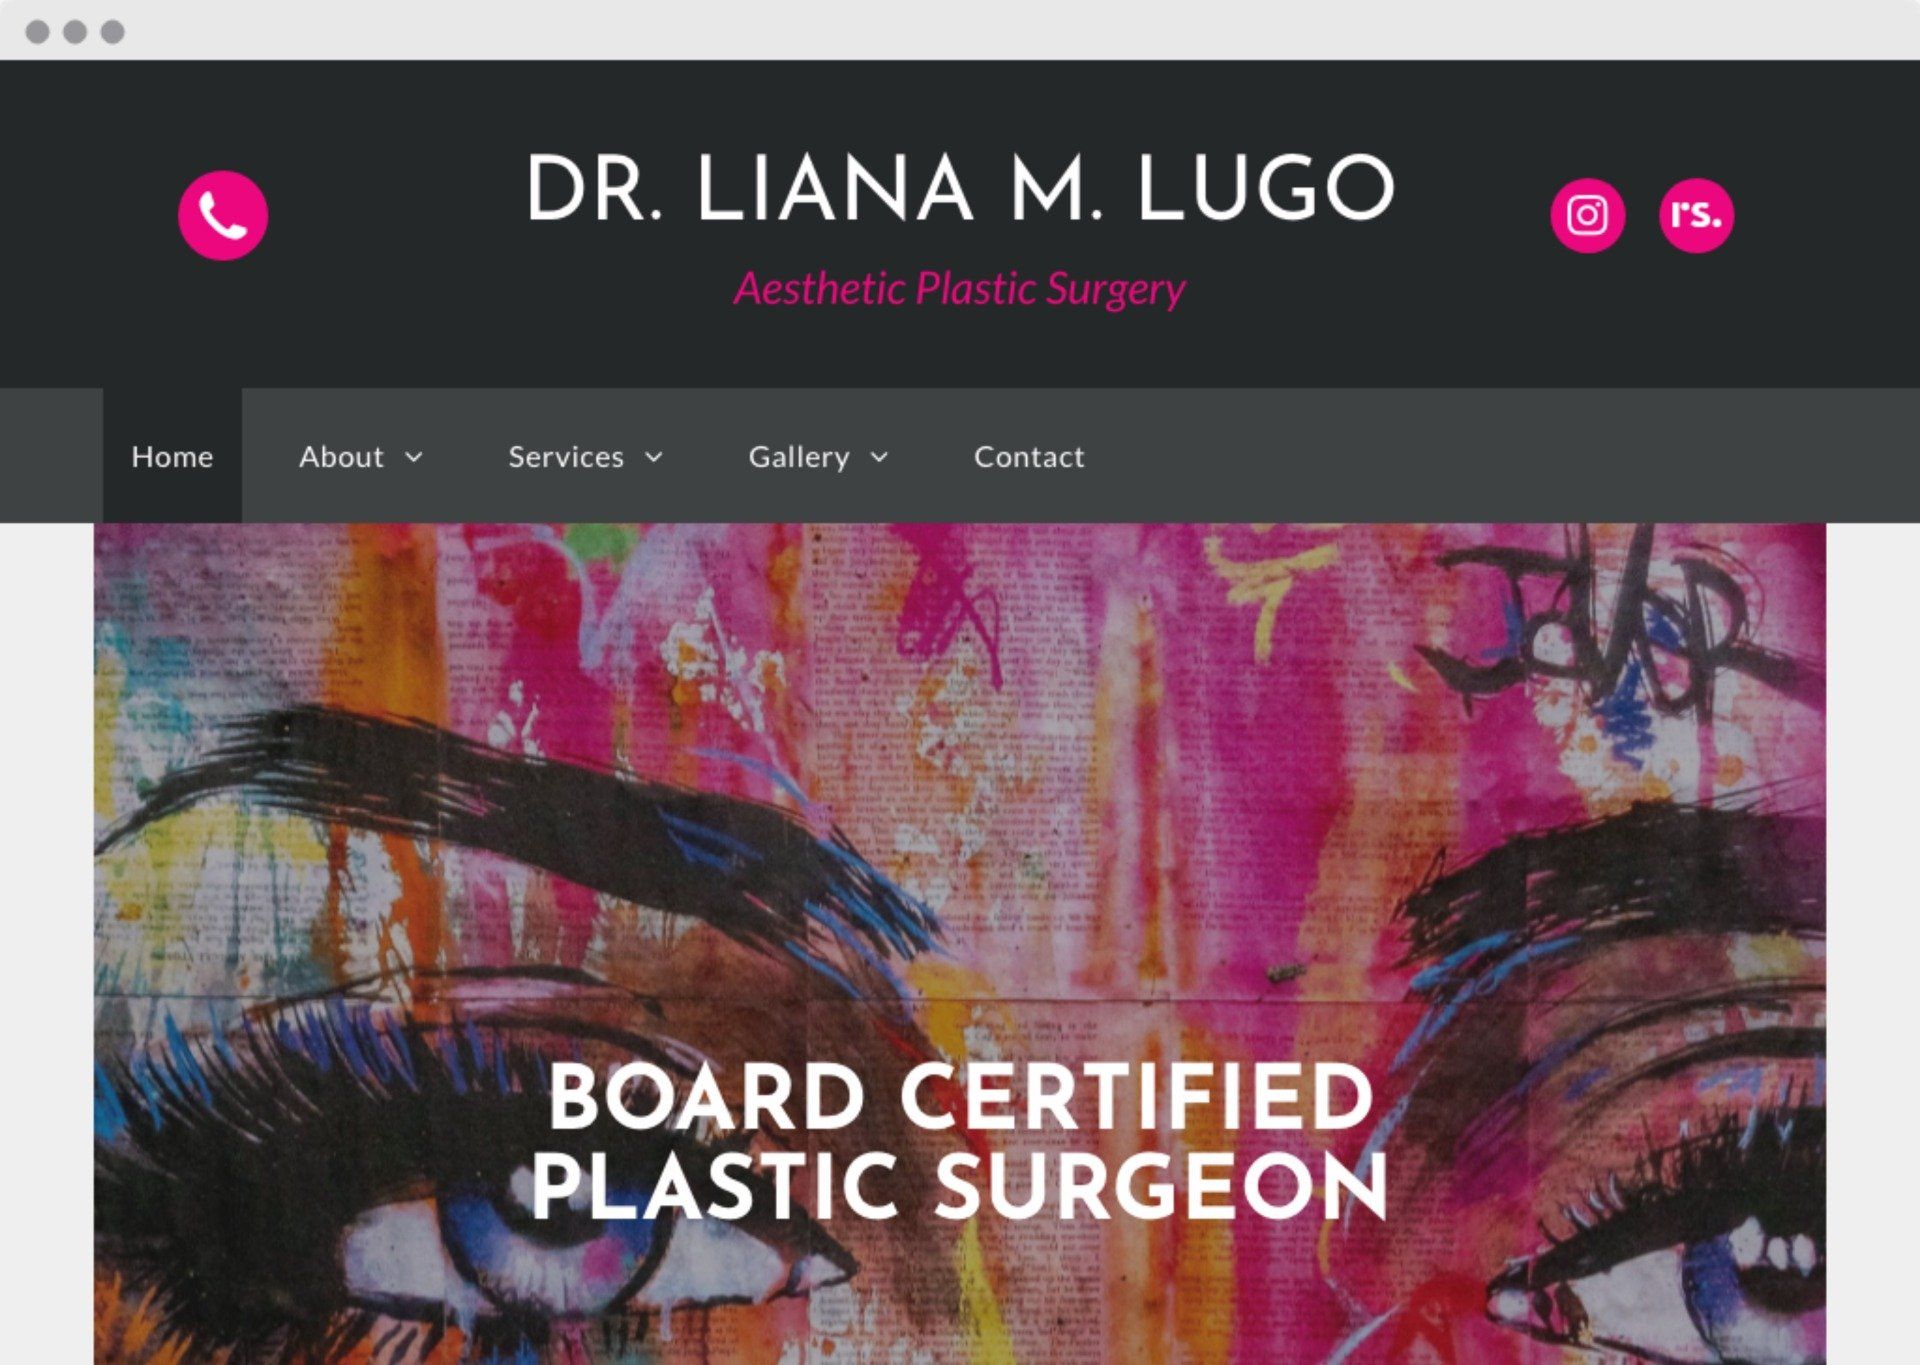 Dr. Liana M. Lugo